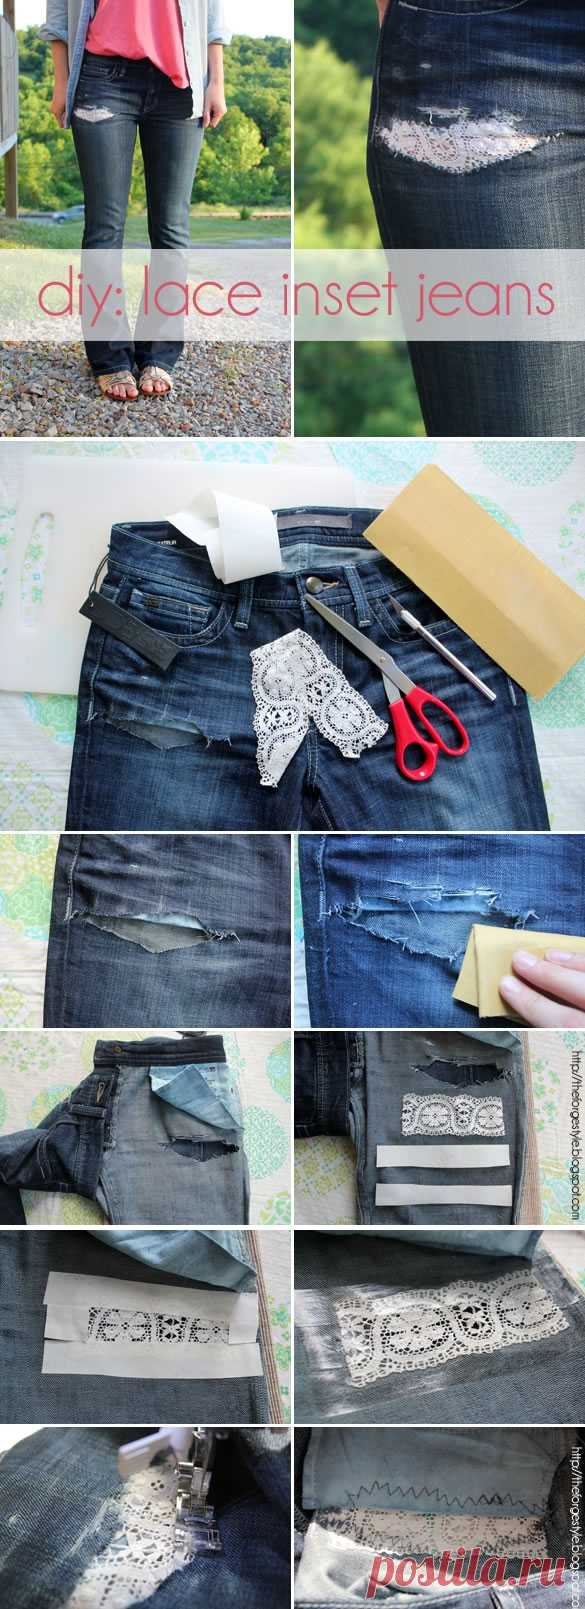 Спасаем джинсы (DIY) / Переделка джинсов / Модный сайт о стильной переделке одежды и интерьера